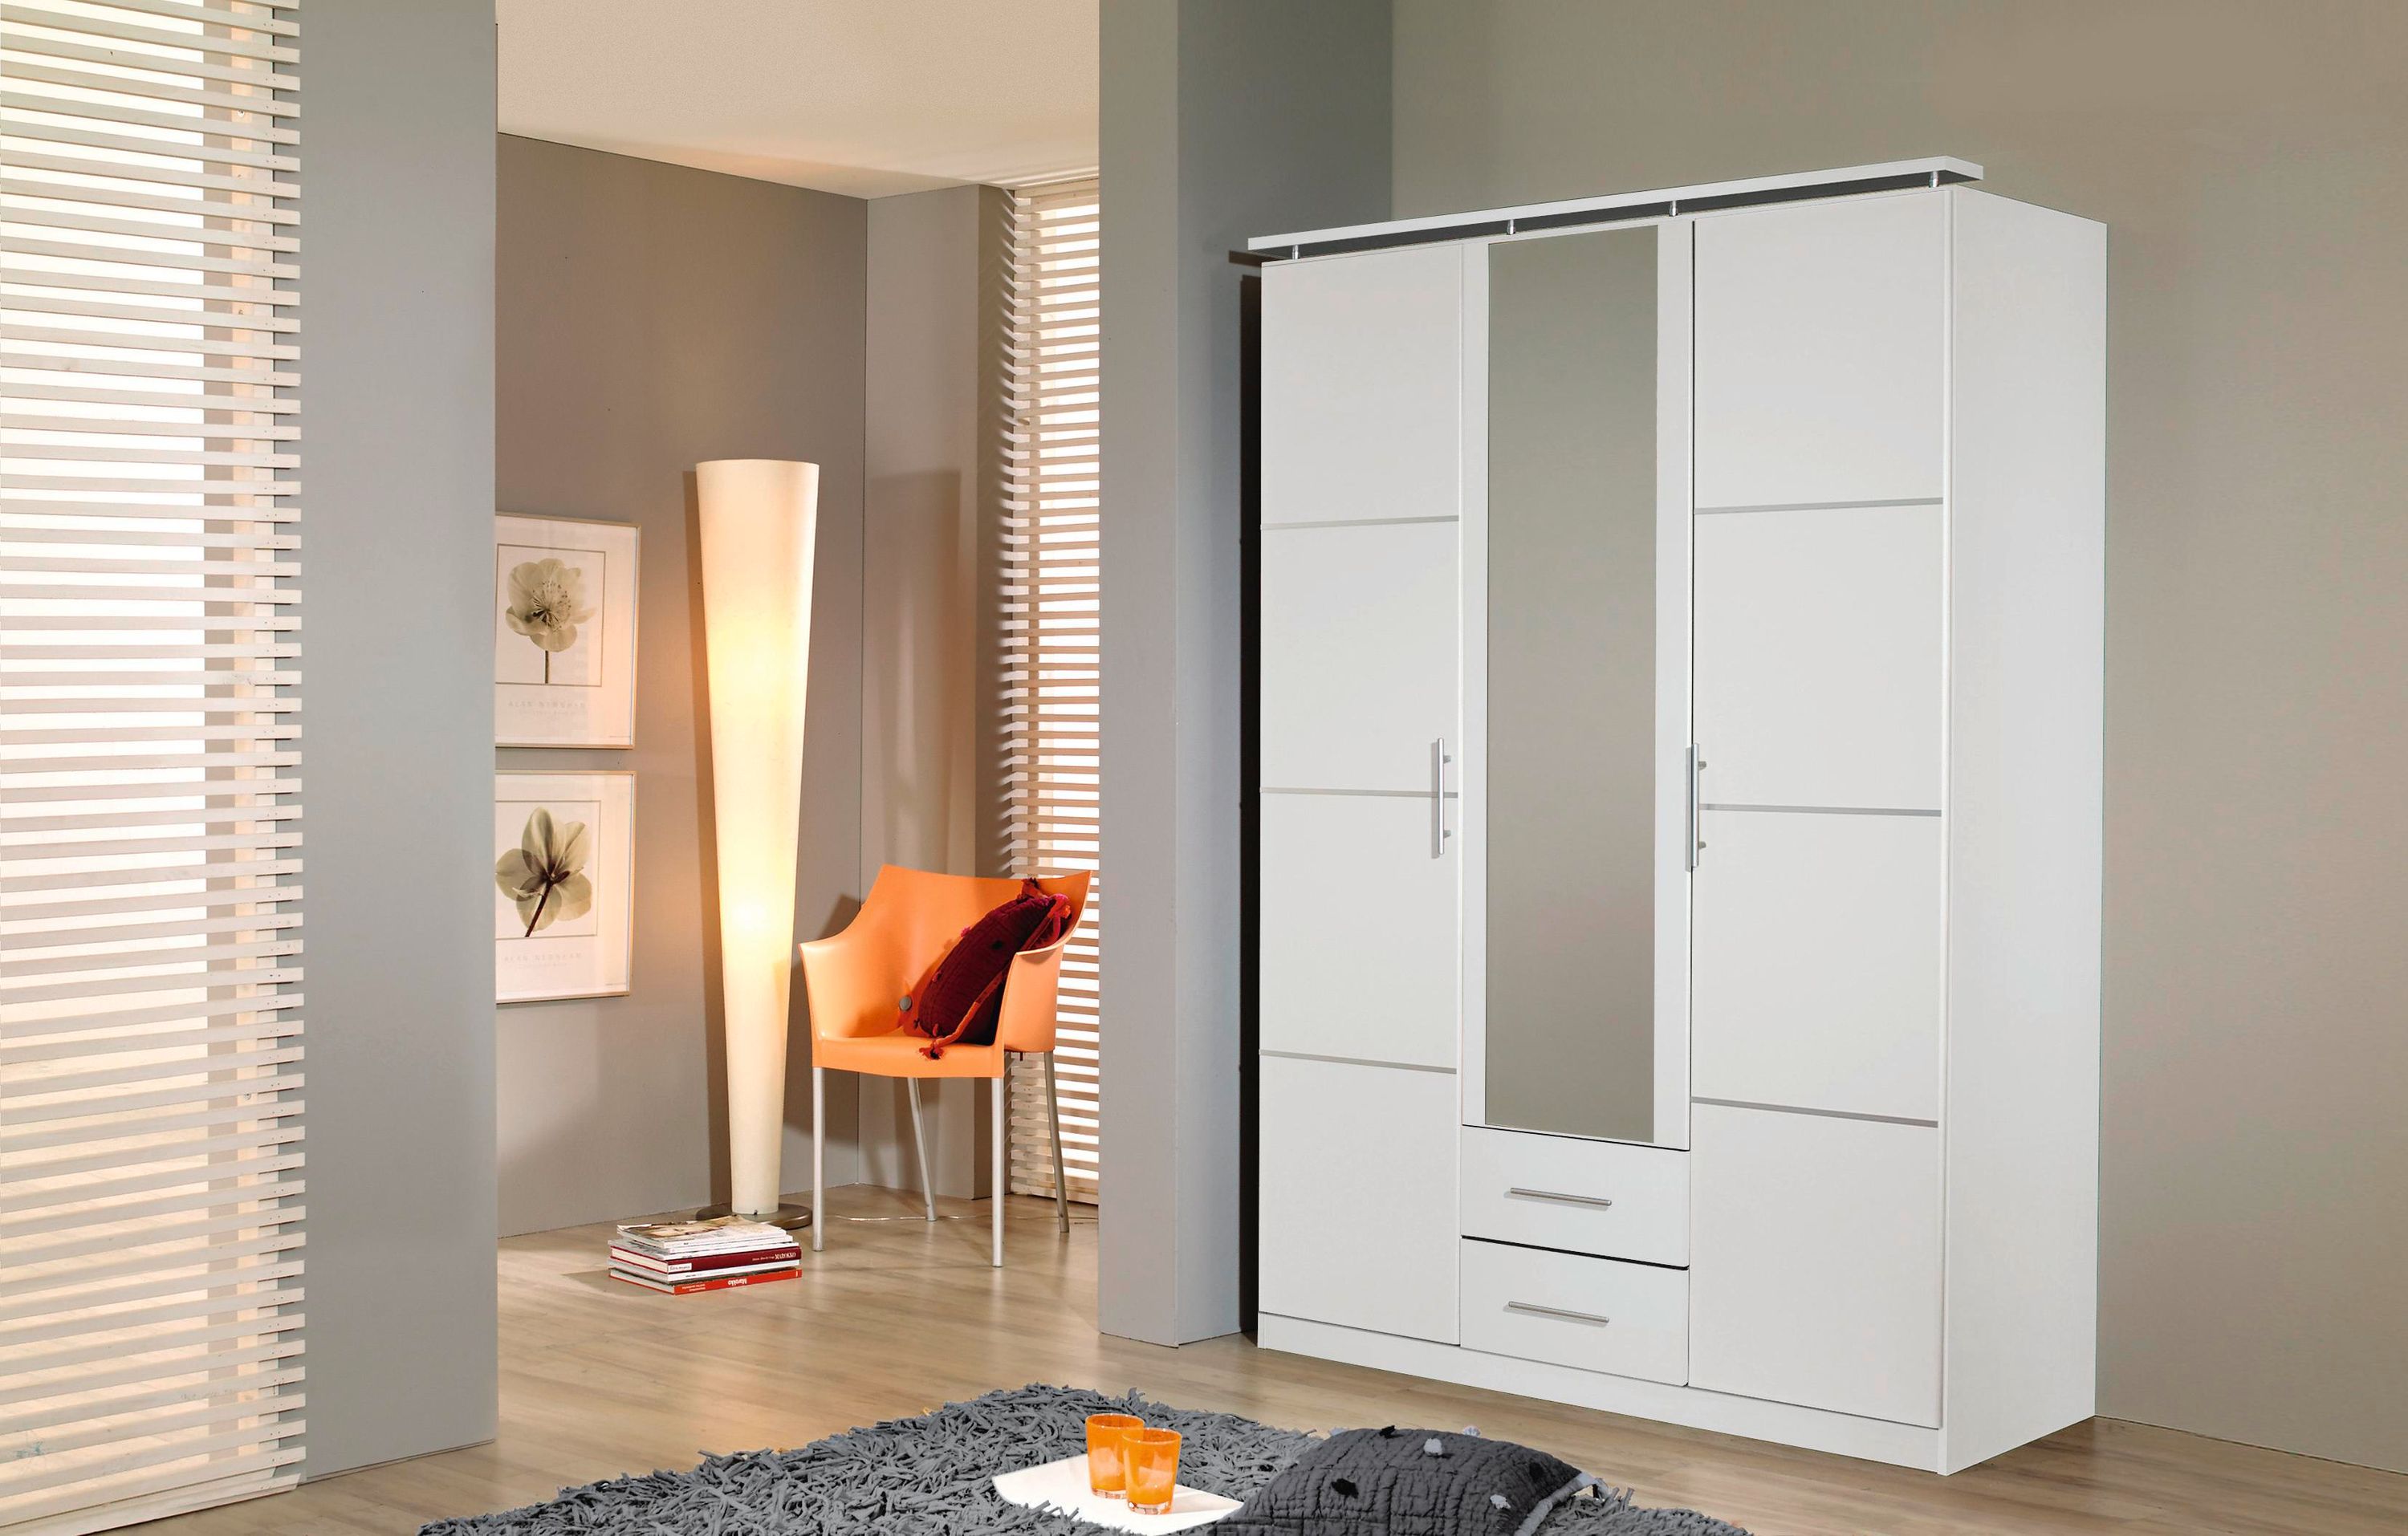 Kleiderschrank Devin weiß 3-trg mit Spiegel und 2 Schubladen B 136 cm - H 201 cm - T 56 cm